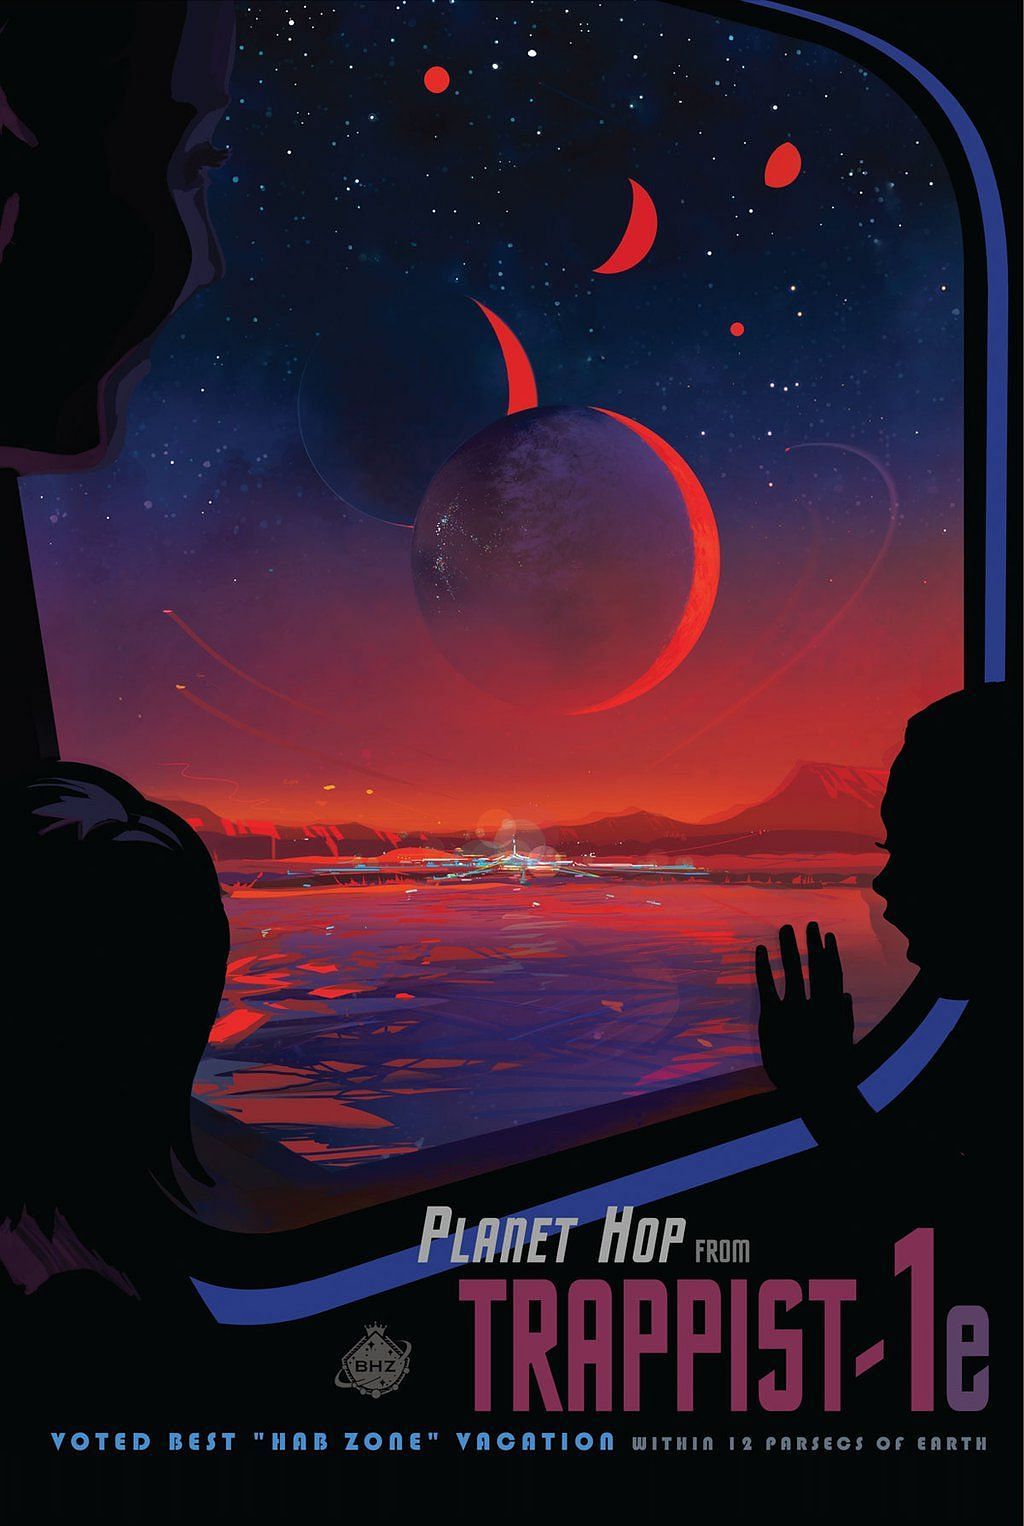 Planet Hop (Image via NASA JPL)